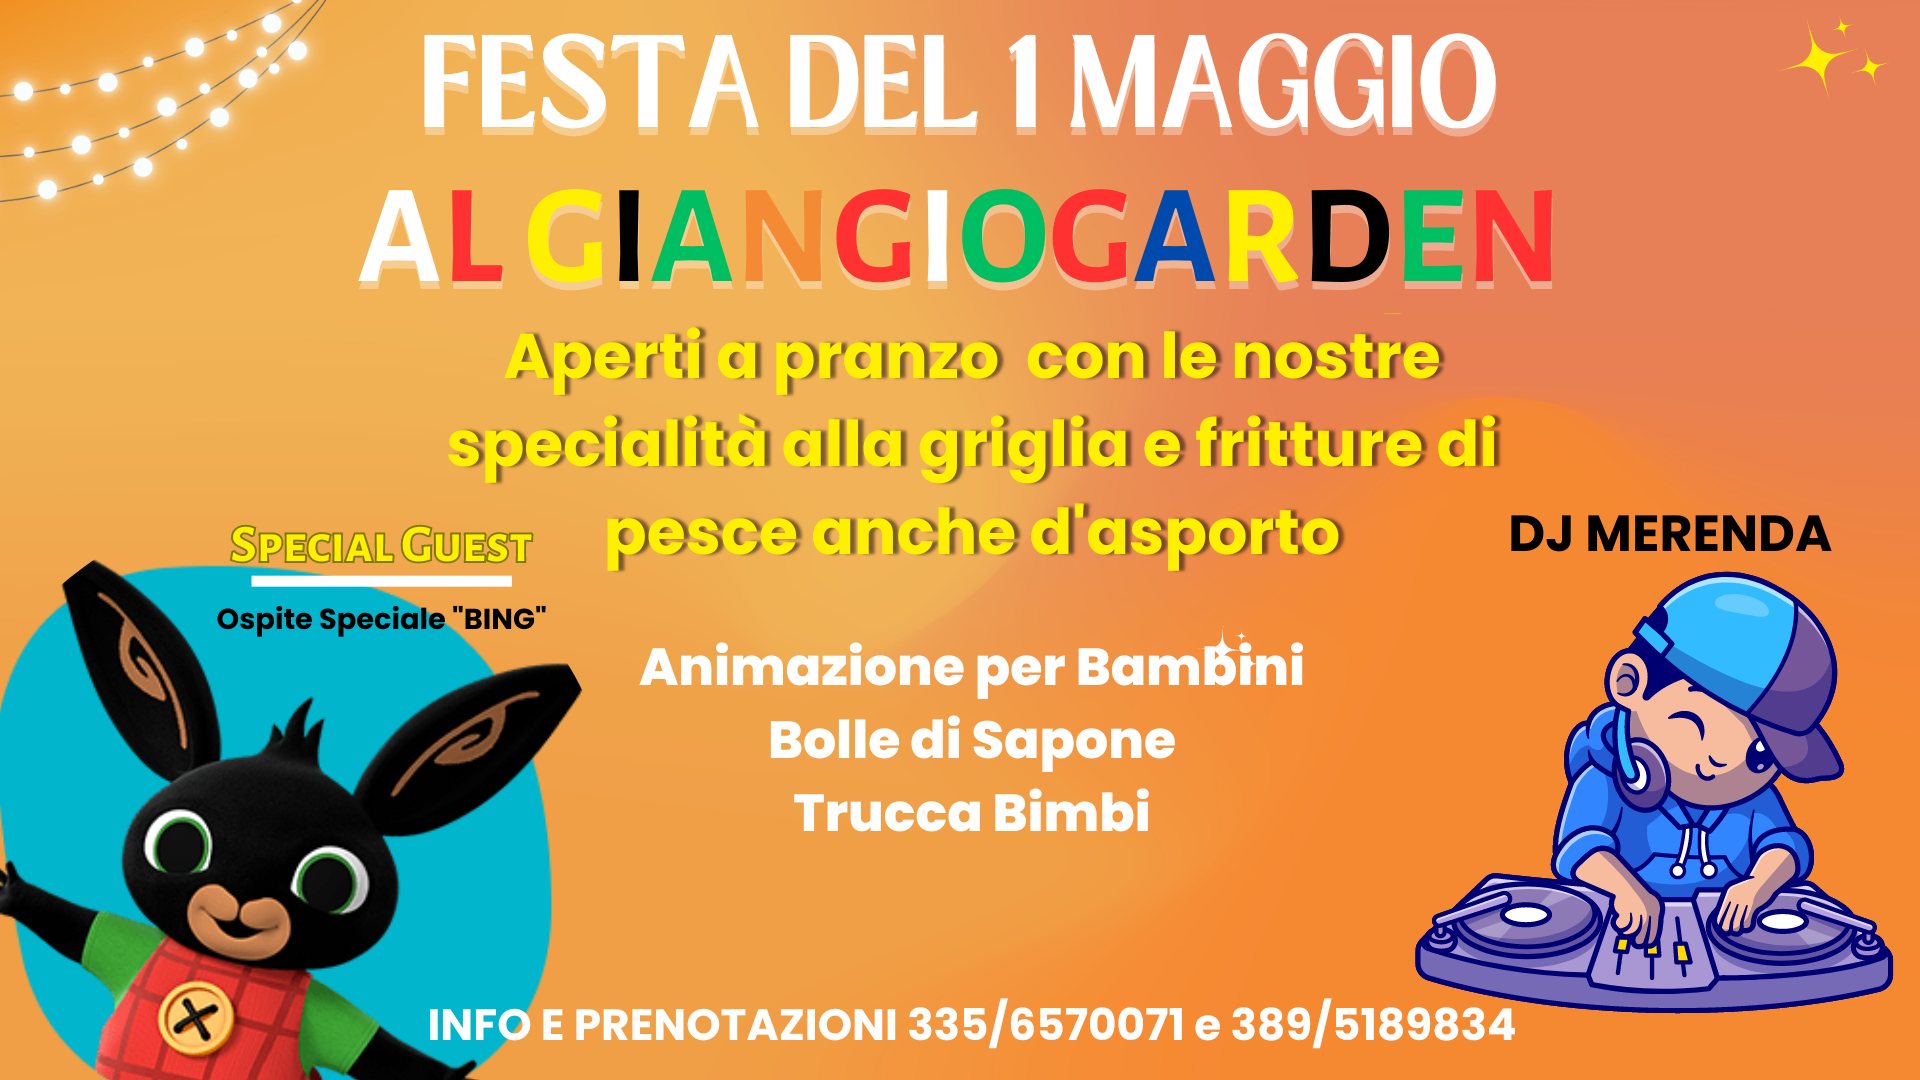 Festa del 1 Maggio, Giangio Garden, Udine